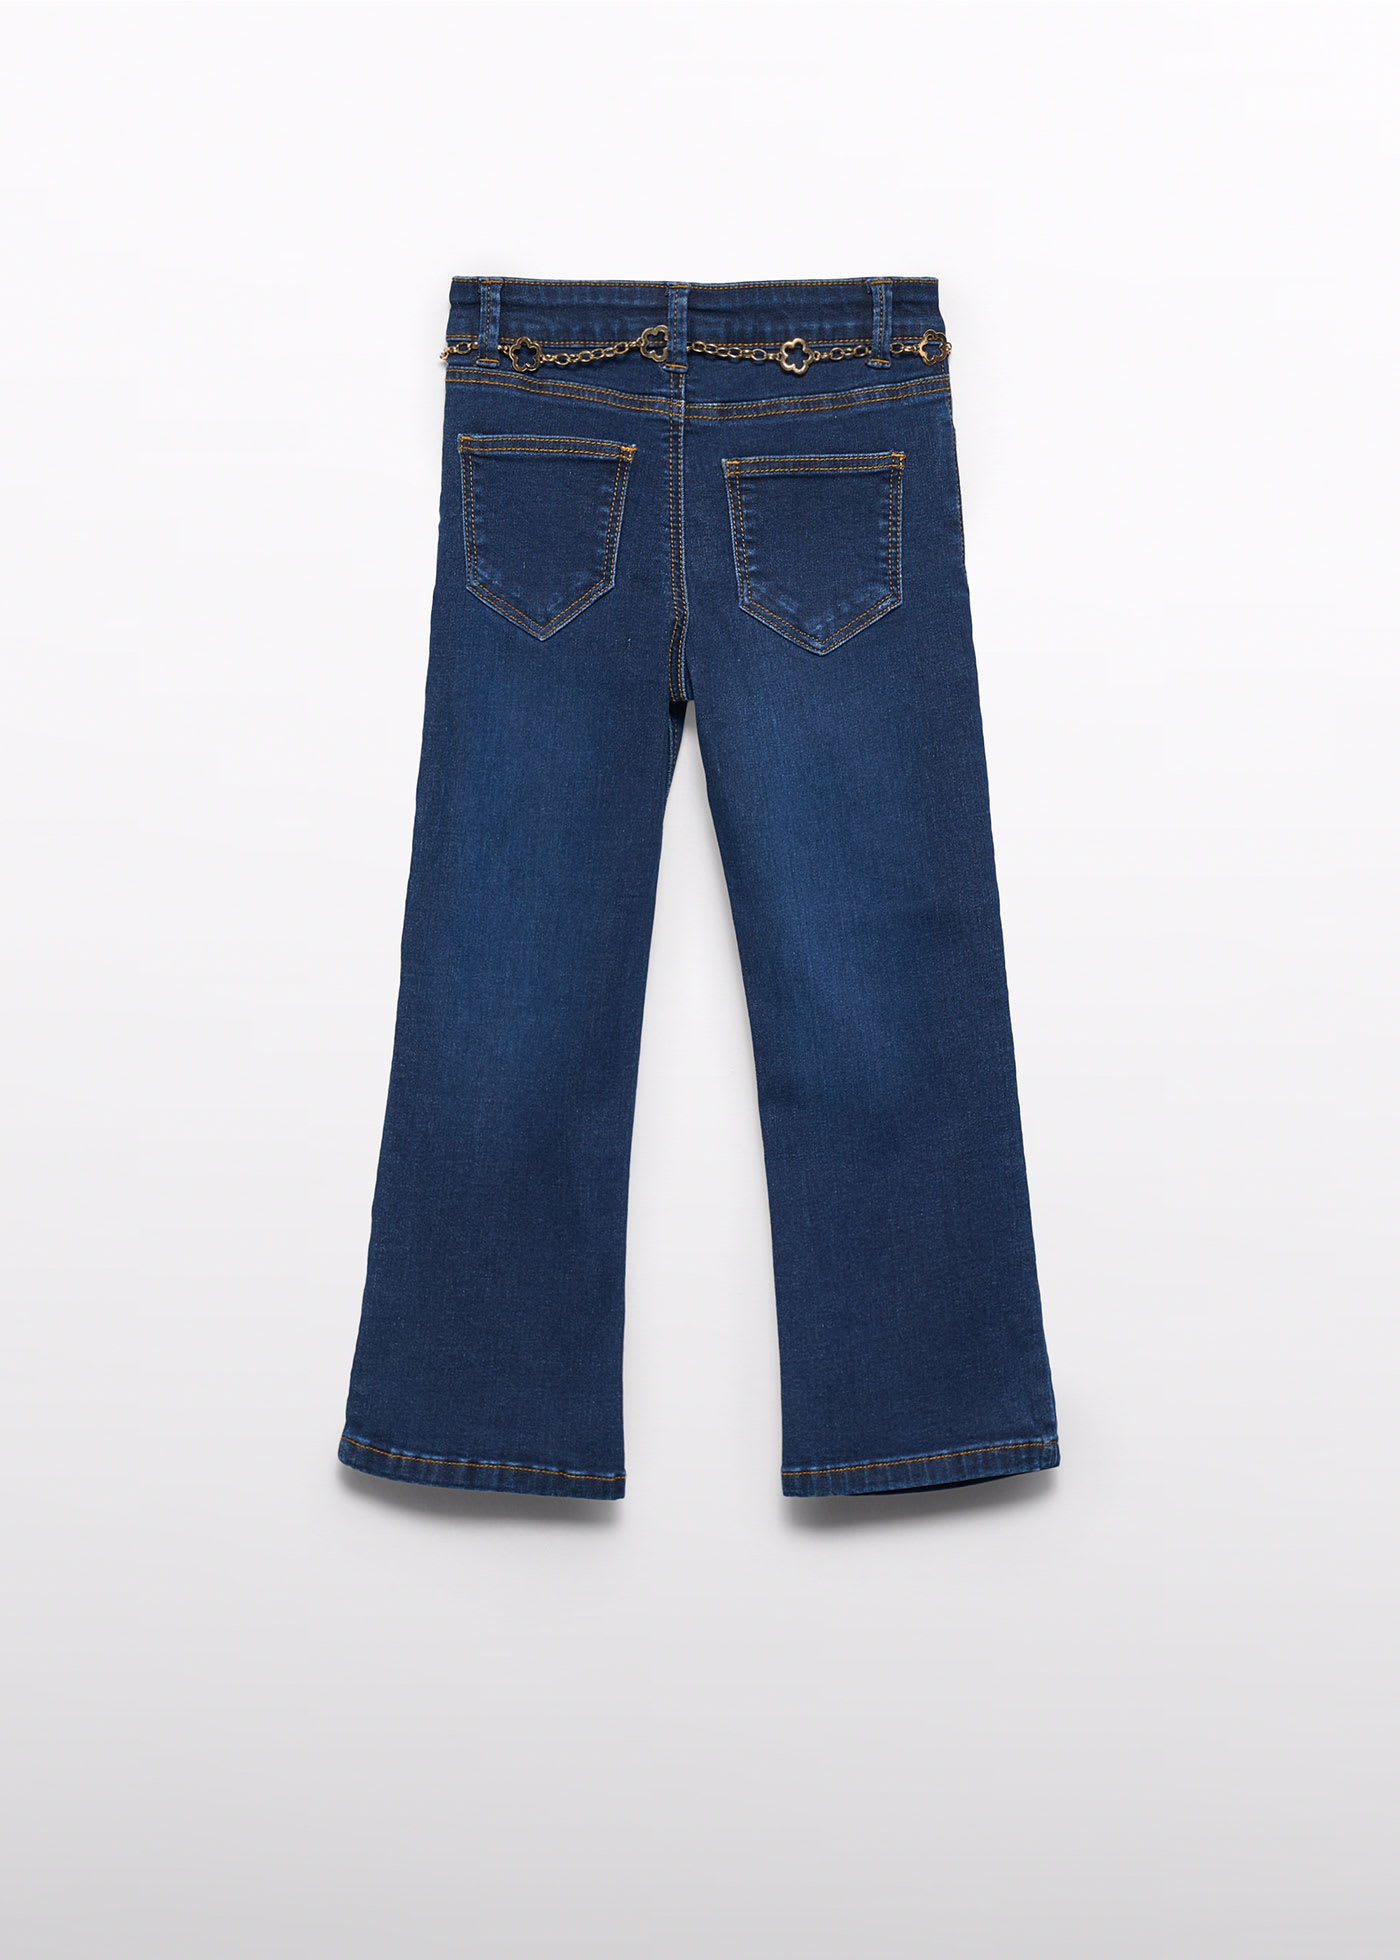 Pantalone jeans flare bambina